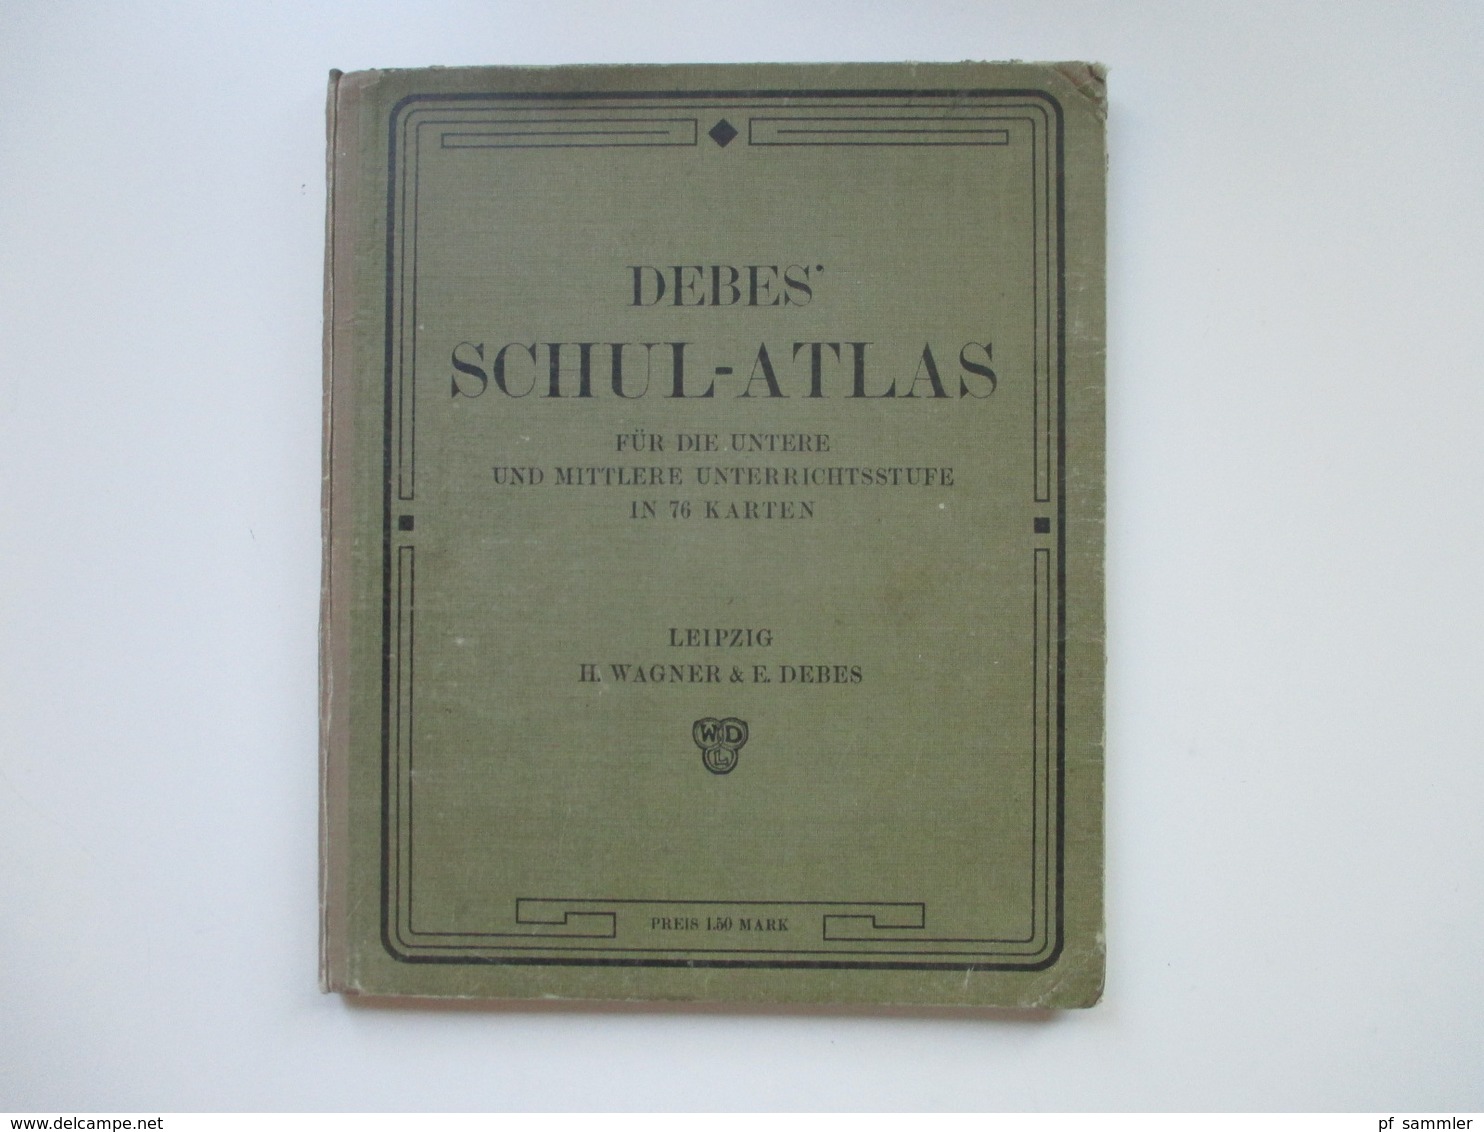 Debes Schulatlas Mit 76 Karten Leipzig H. Wagner & E. Debes. Jahr 1914 - Mappemondes